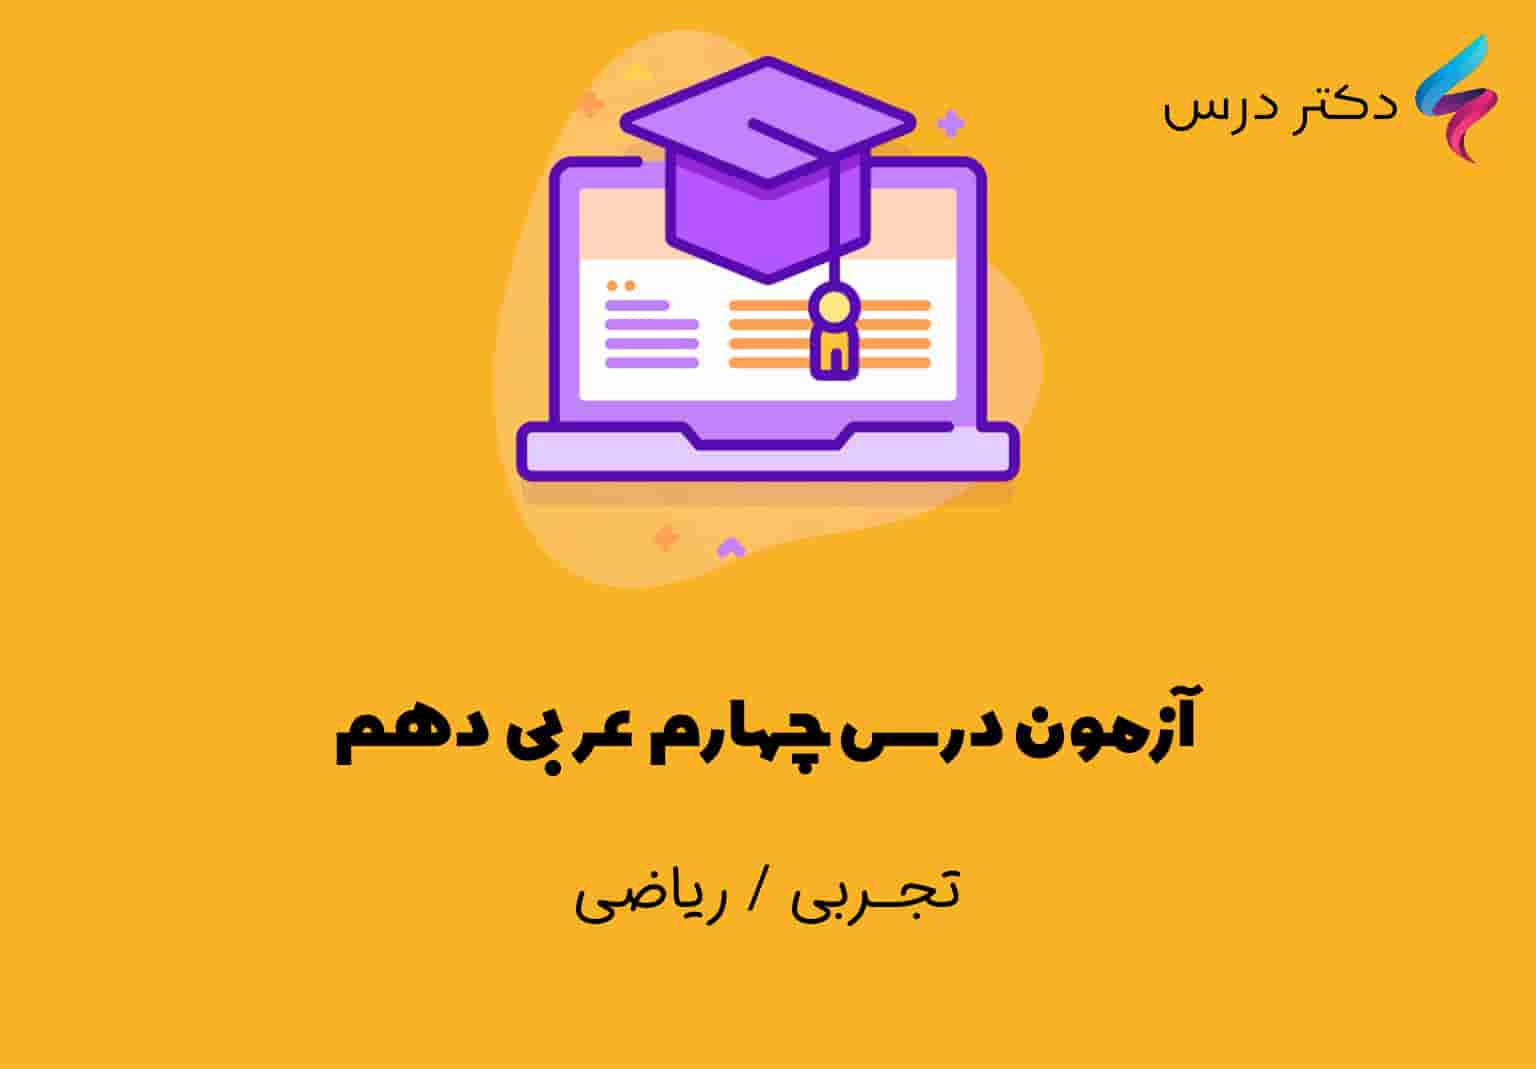 آزمون درس چهارم عربی دهم ویژه رشته تجربی و ریاضی